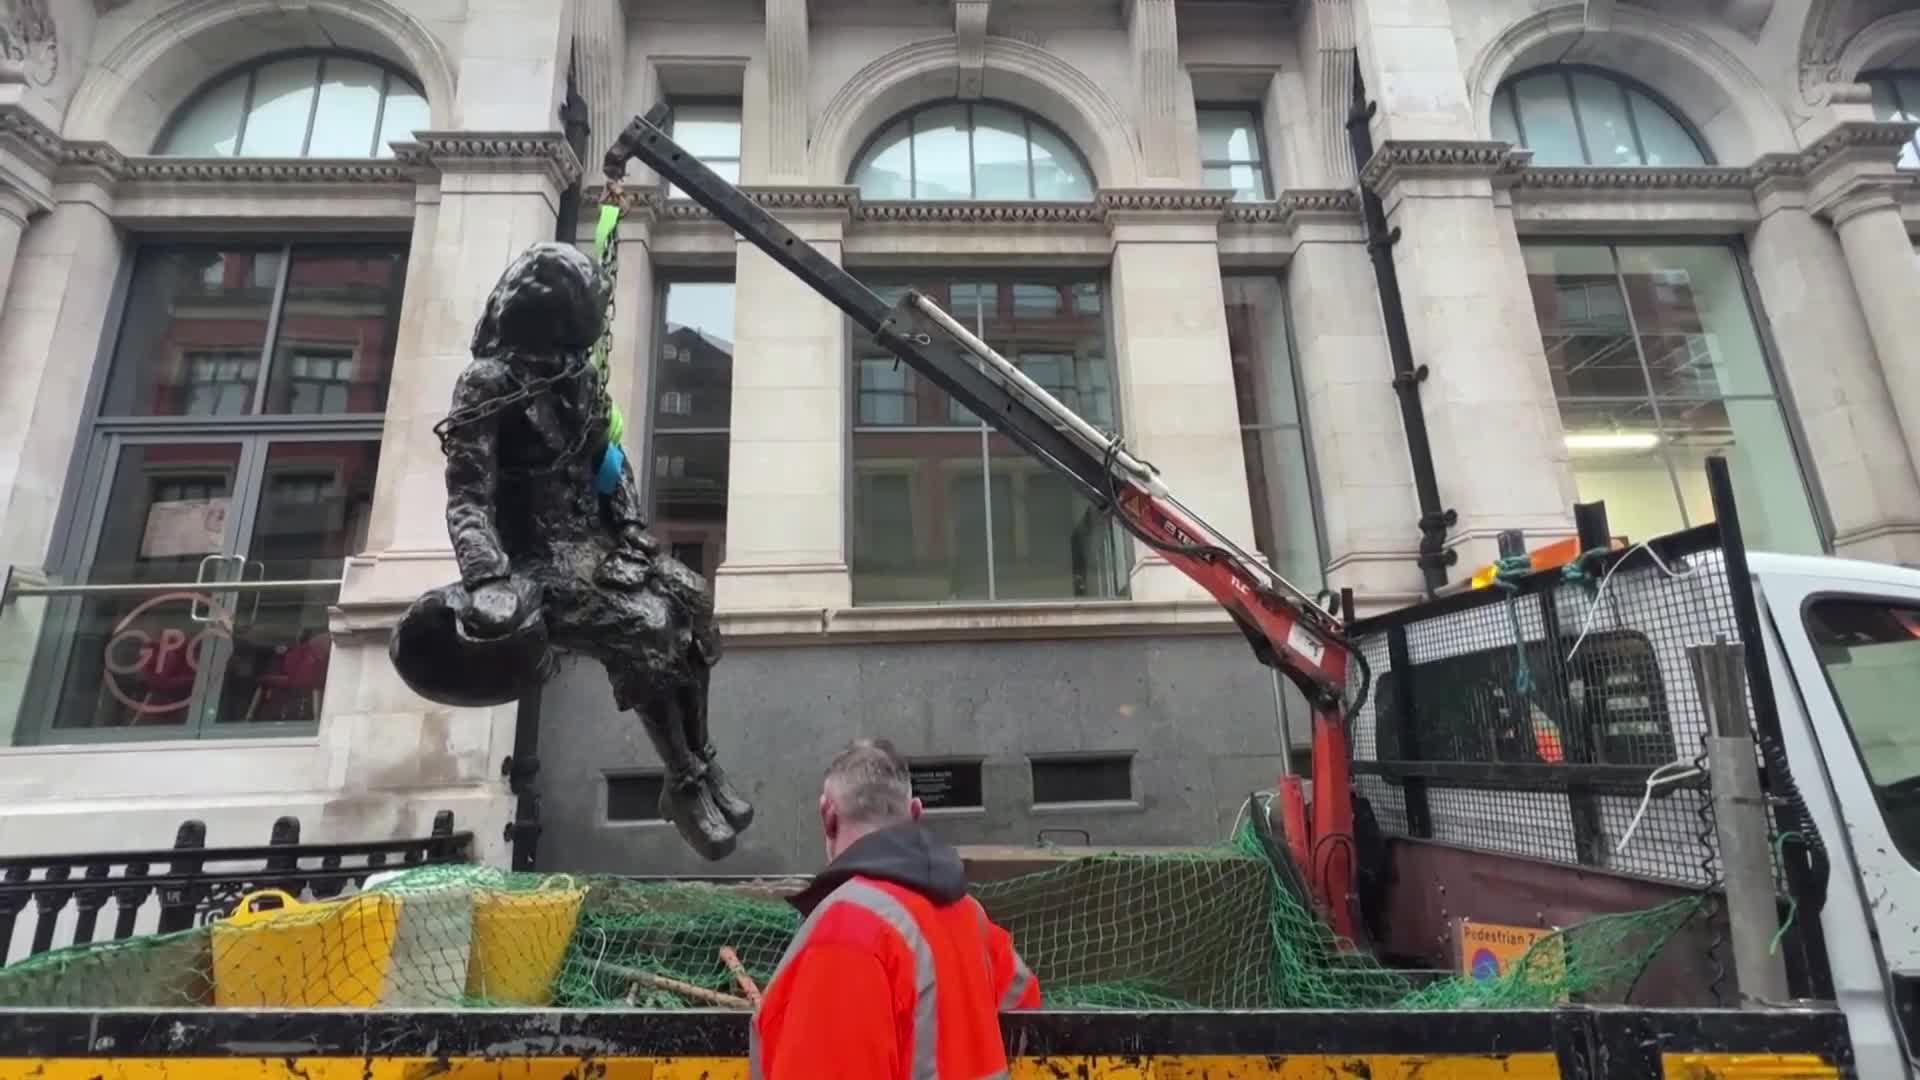 Вдъхновена от Бийтълс статуя бе премахната след вандализъм (ВИДЕО)